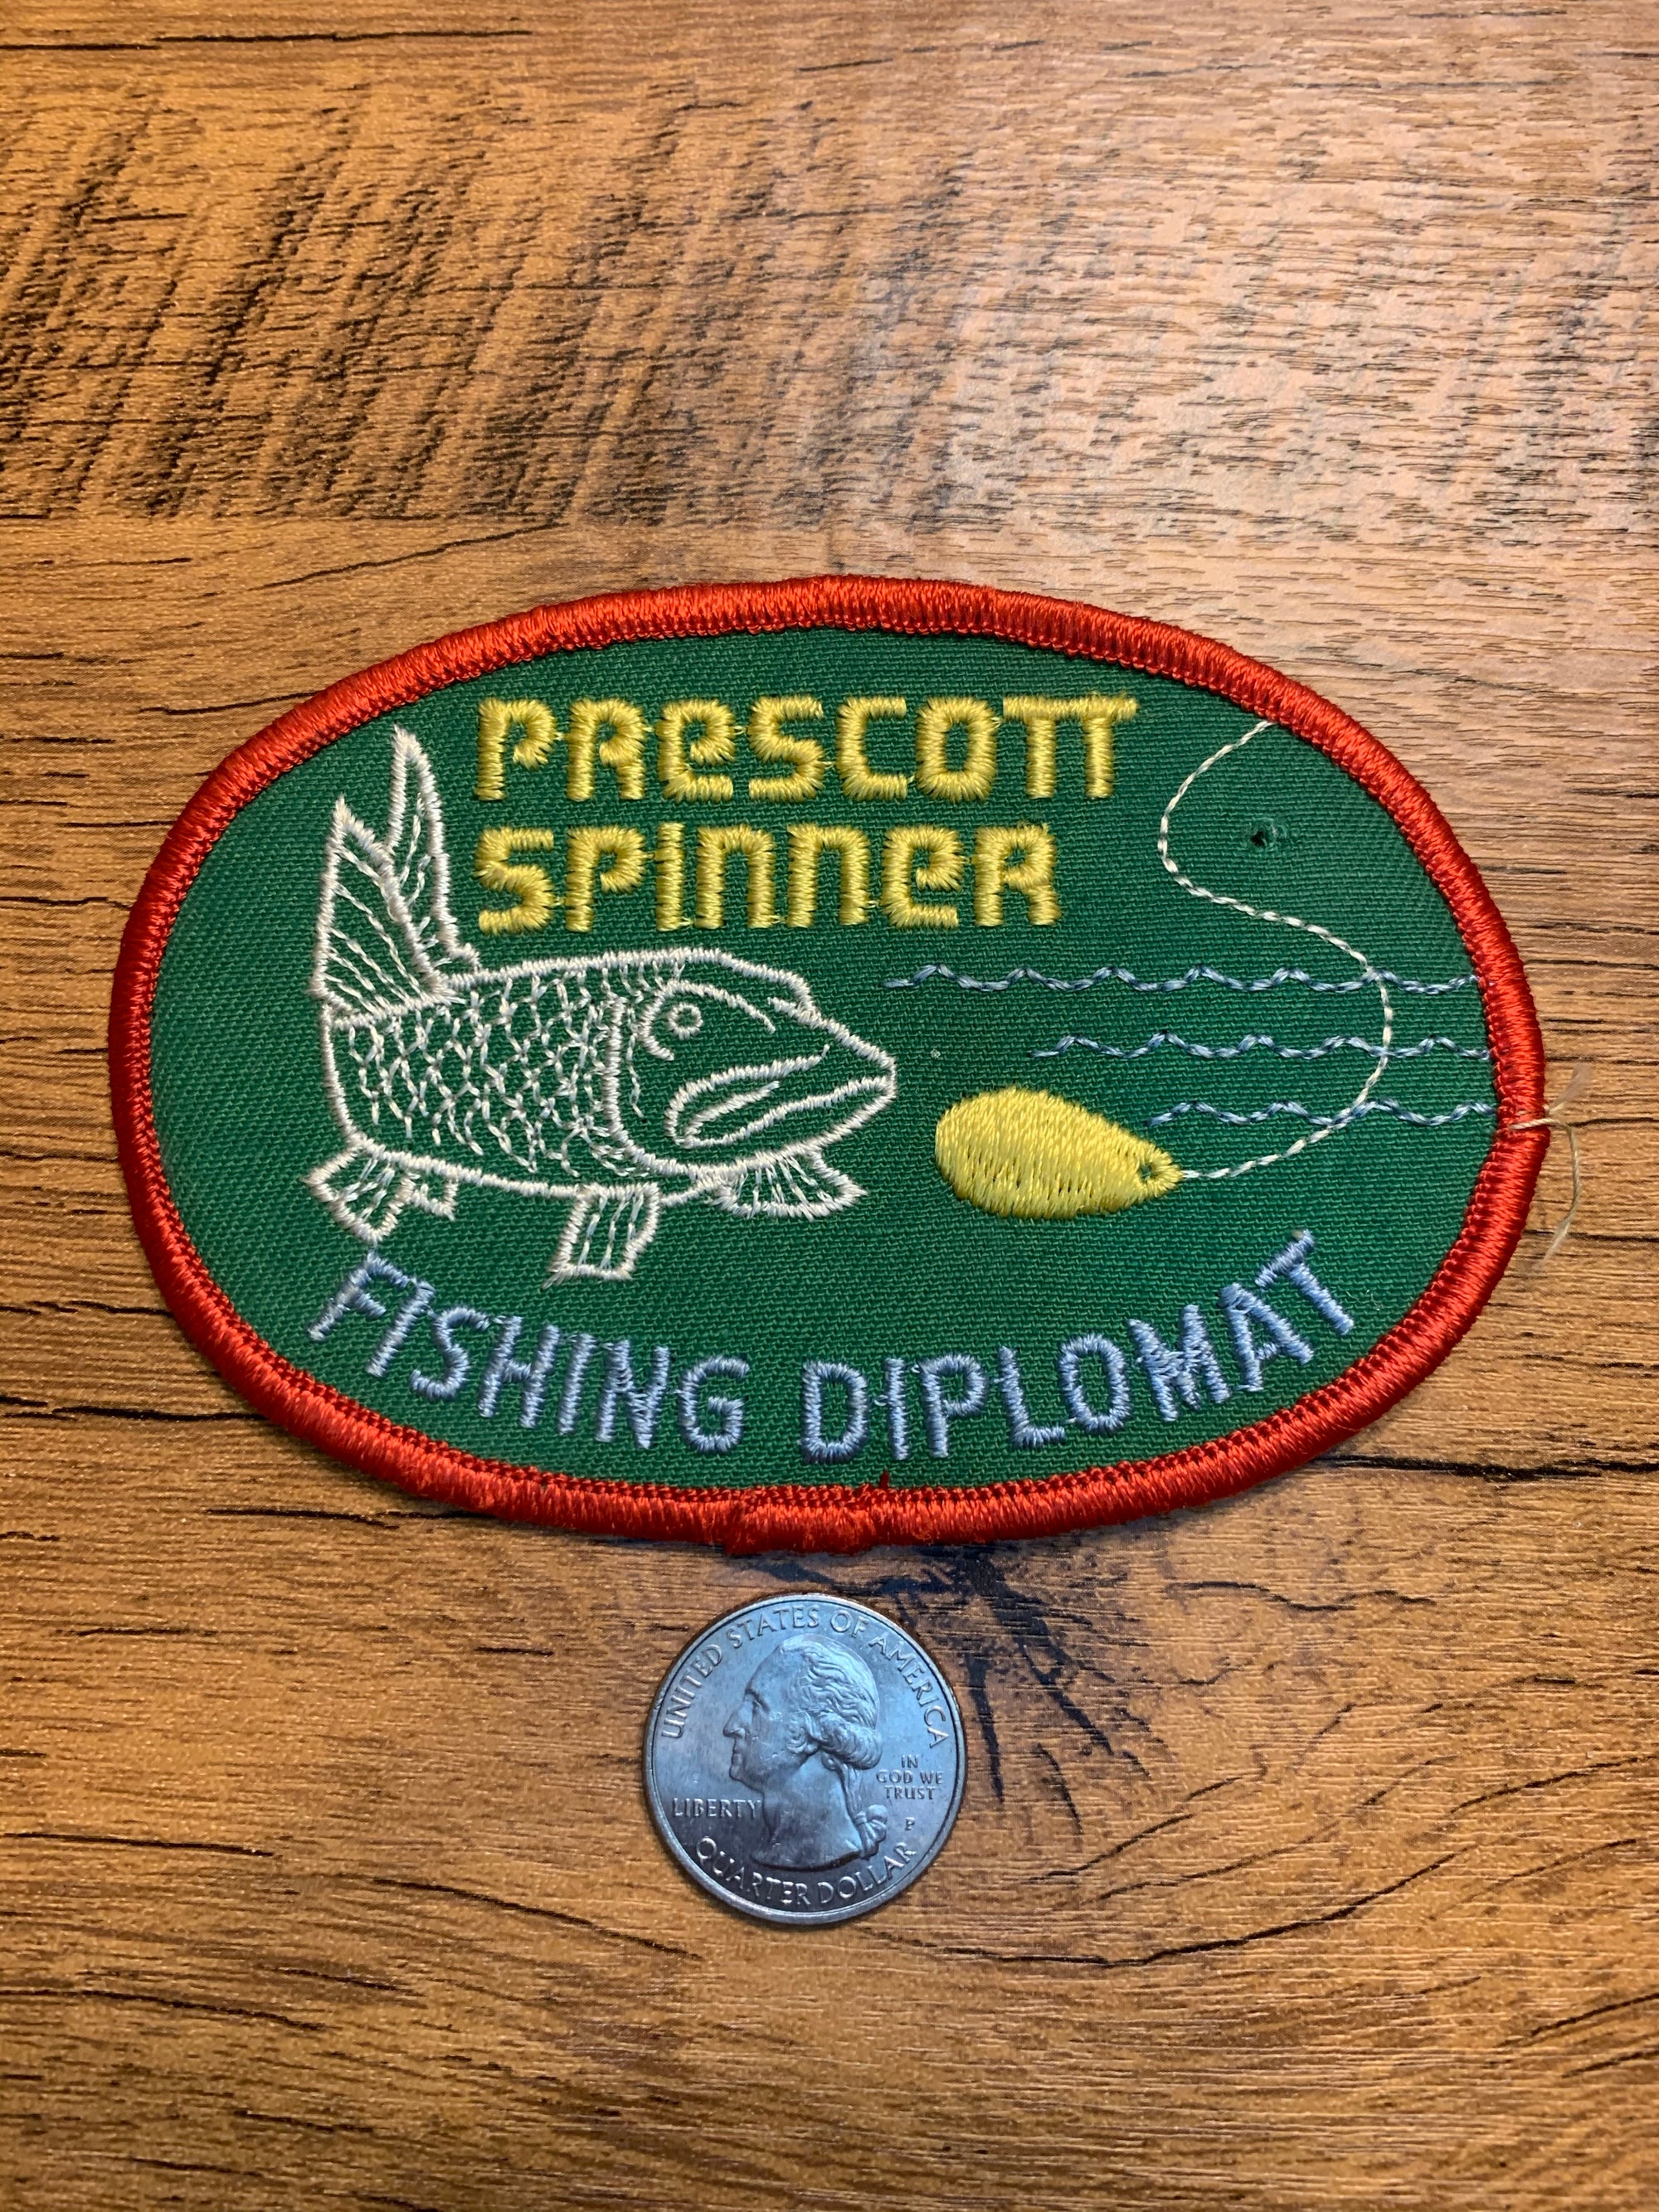 Vintage Prescott Spinner- Fishing Diplomat